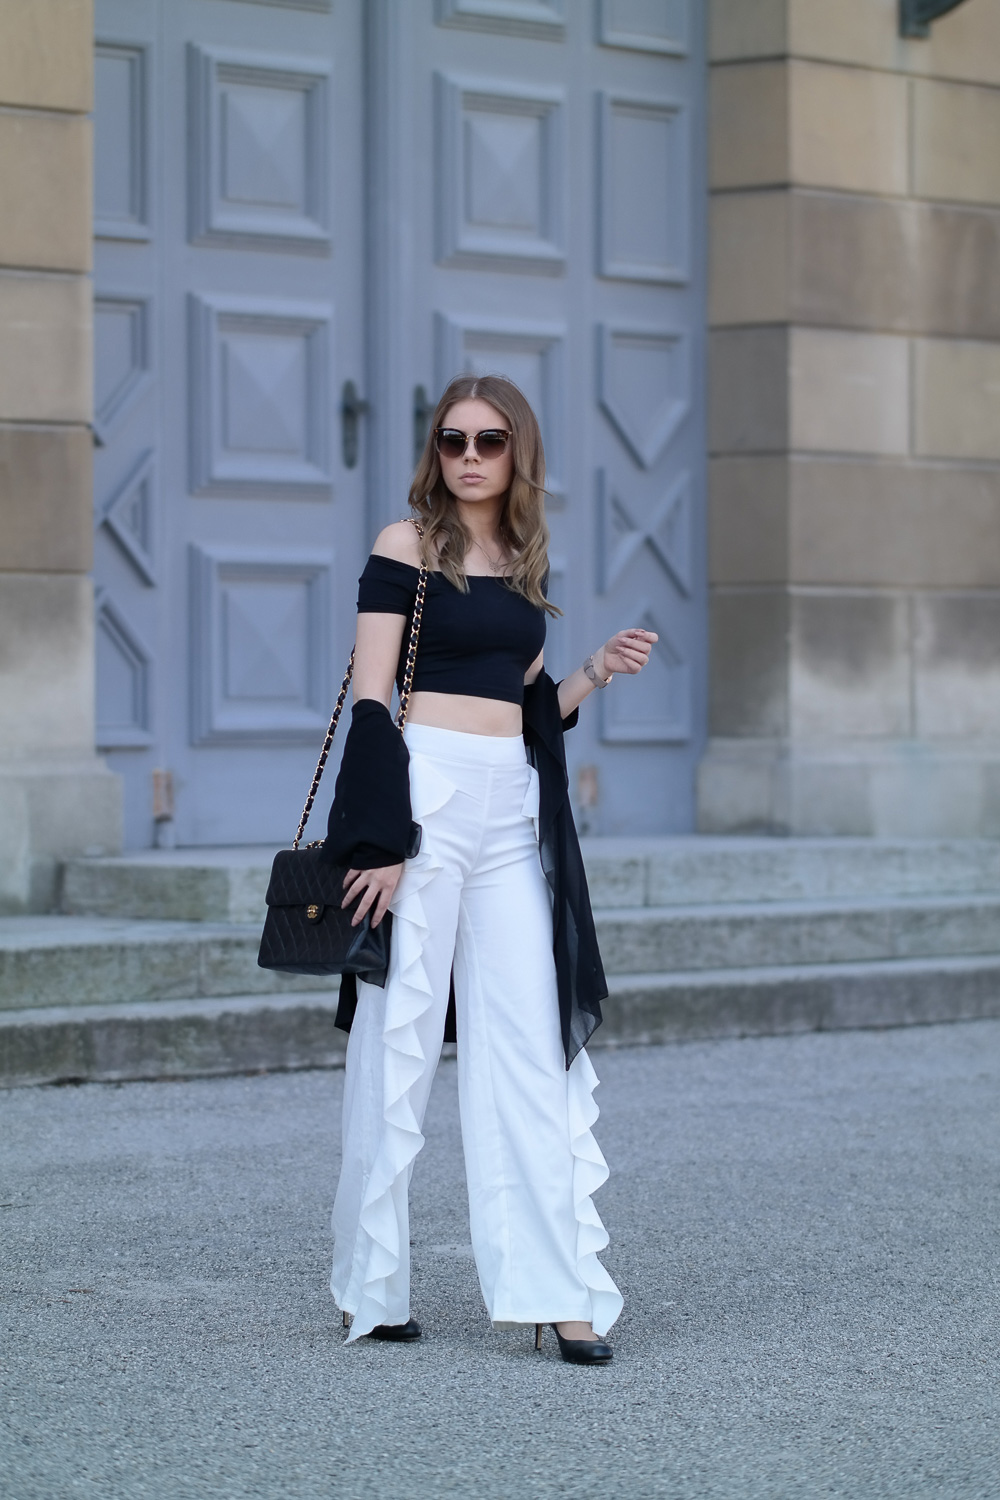 Marken Tasche-Chanel-Handtasche-Blogger Business-High Fashion Look